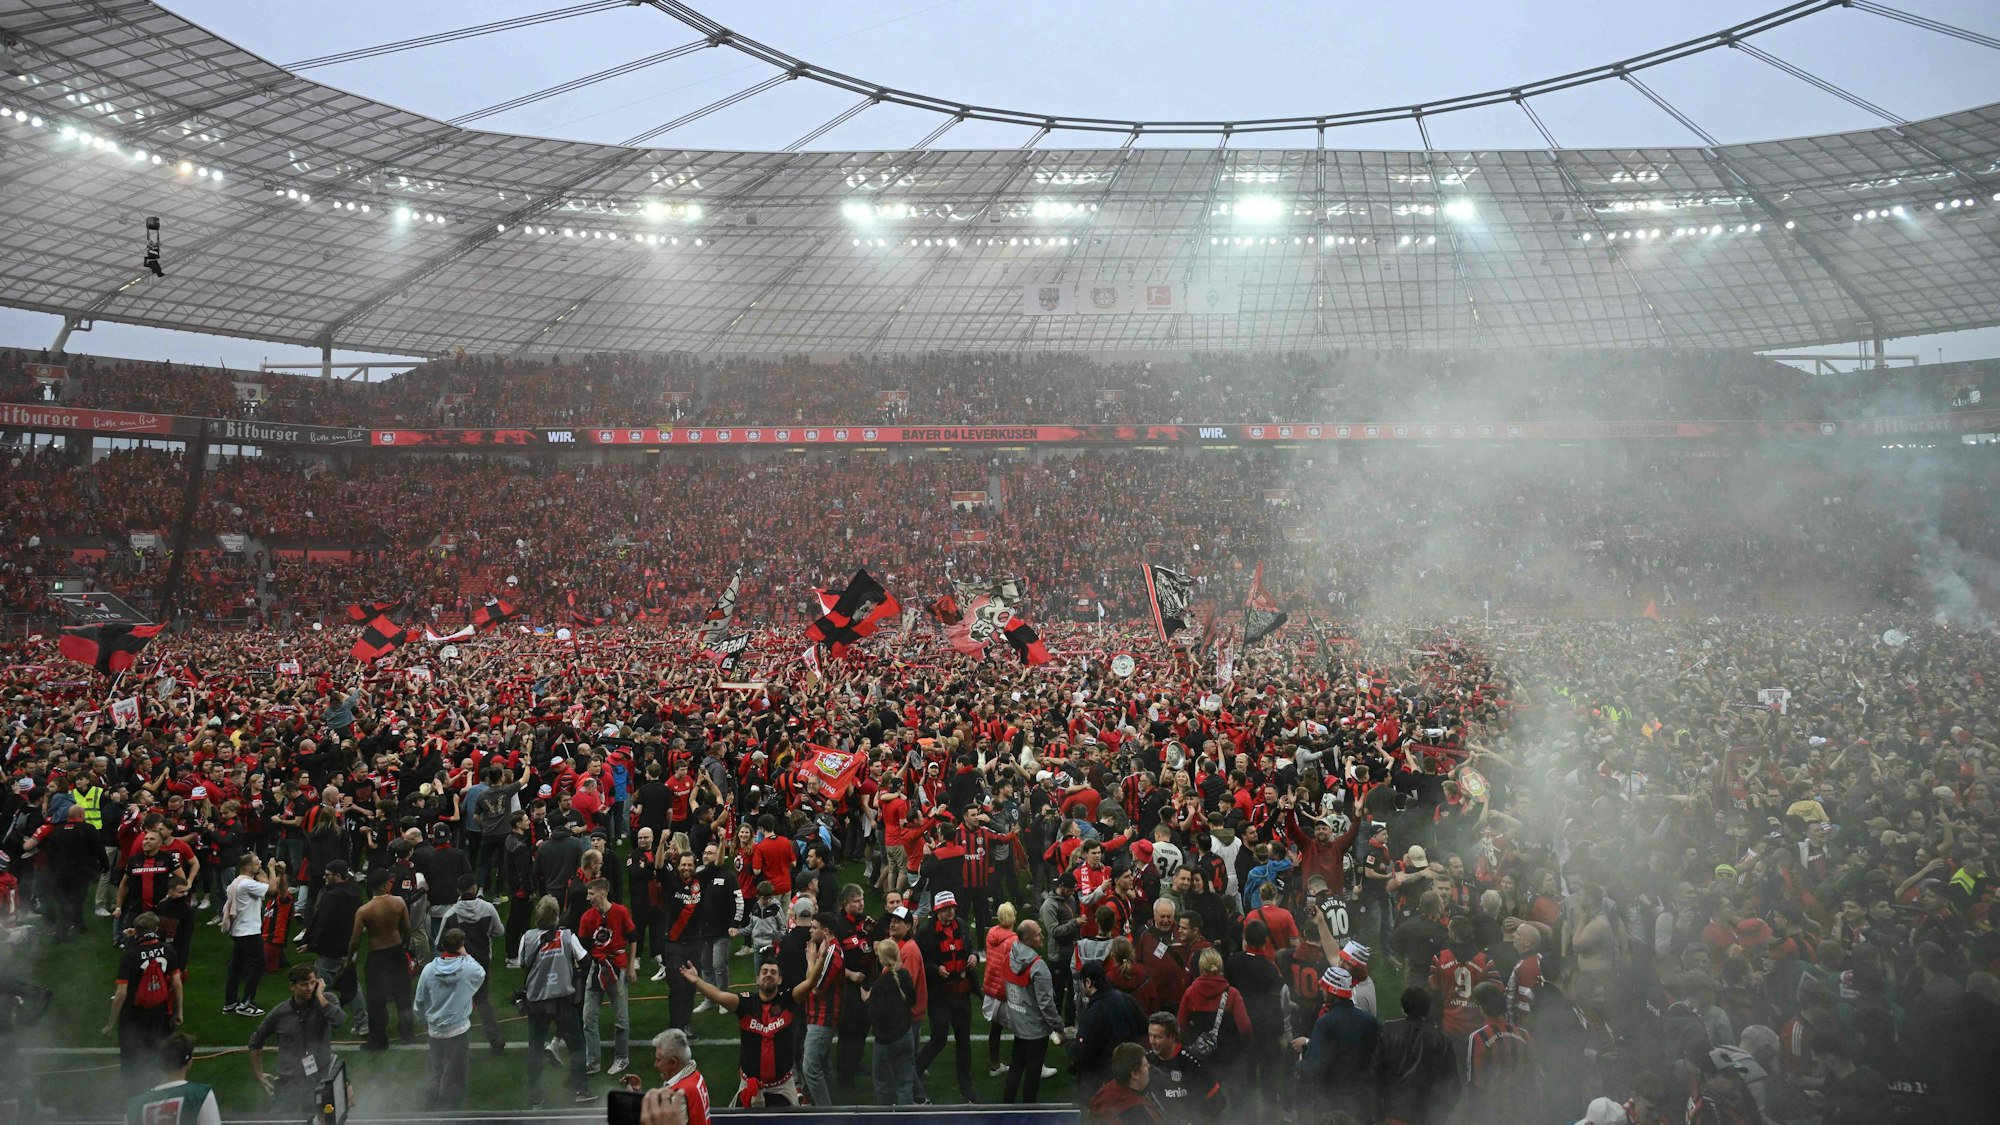 Platzsturm: Fans von Bayer 04 Leverkusen stürmen den Platz nach dem ersten Meistertitel.